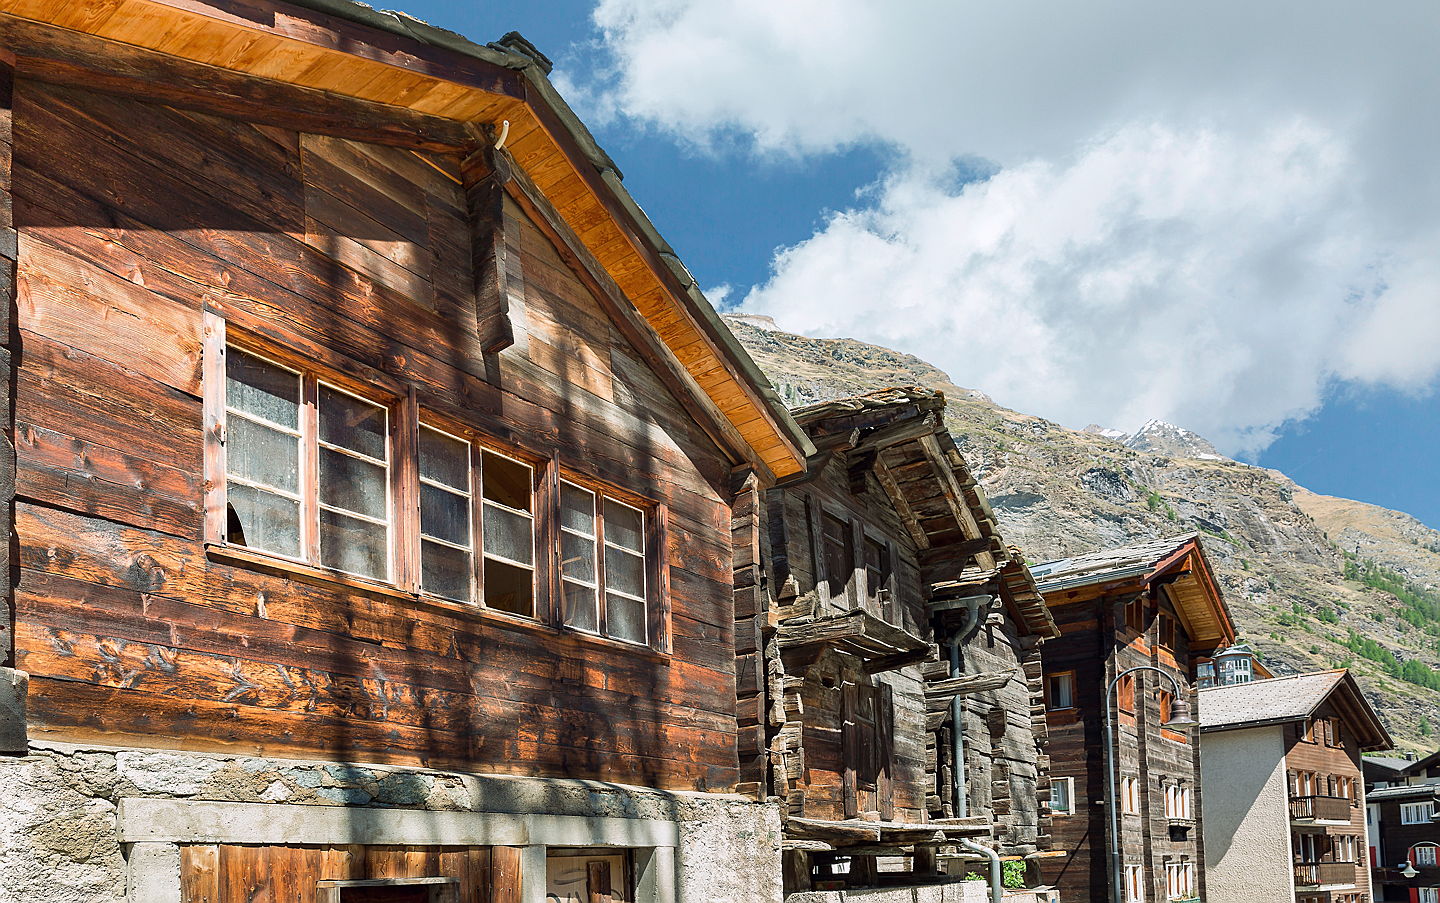  Dietikon, Schweiz
- Chalet in Zermatt